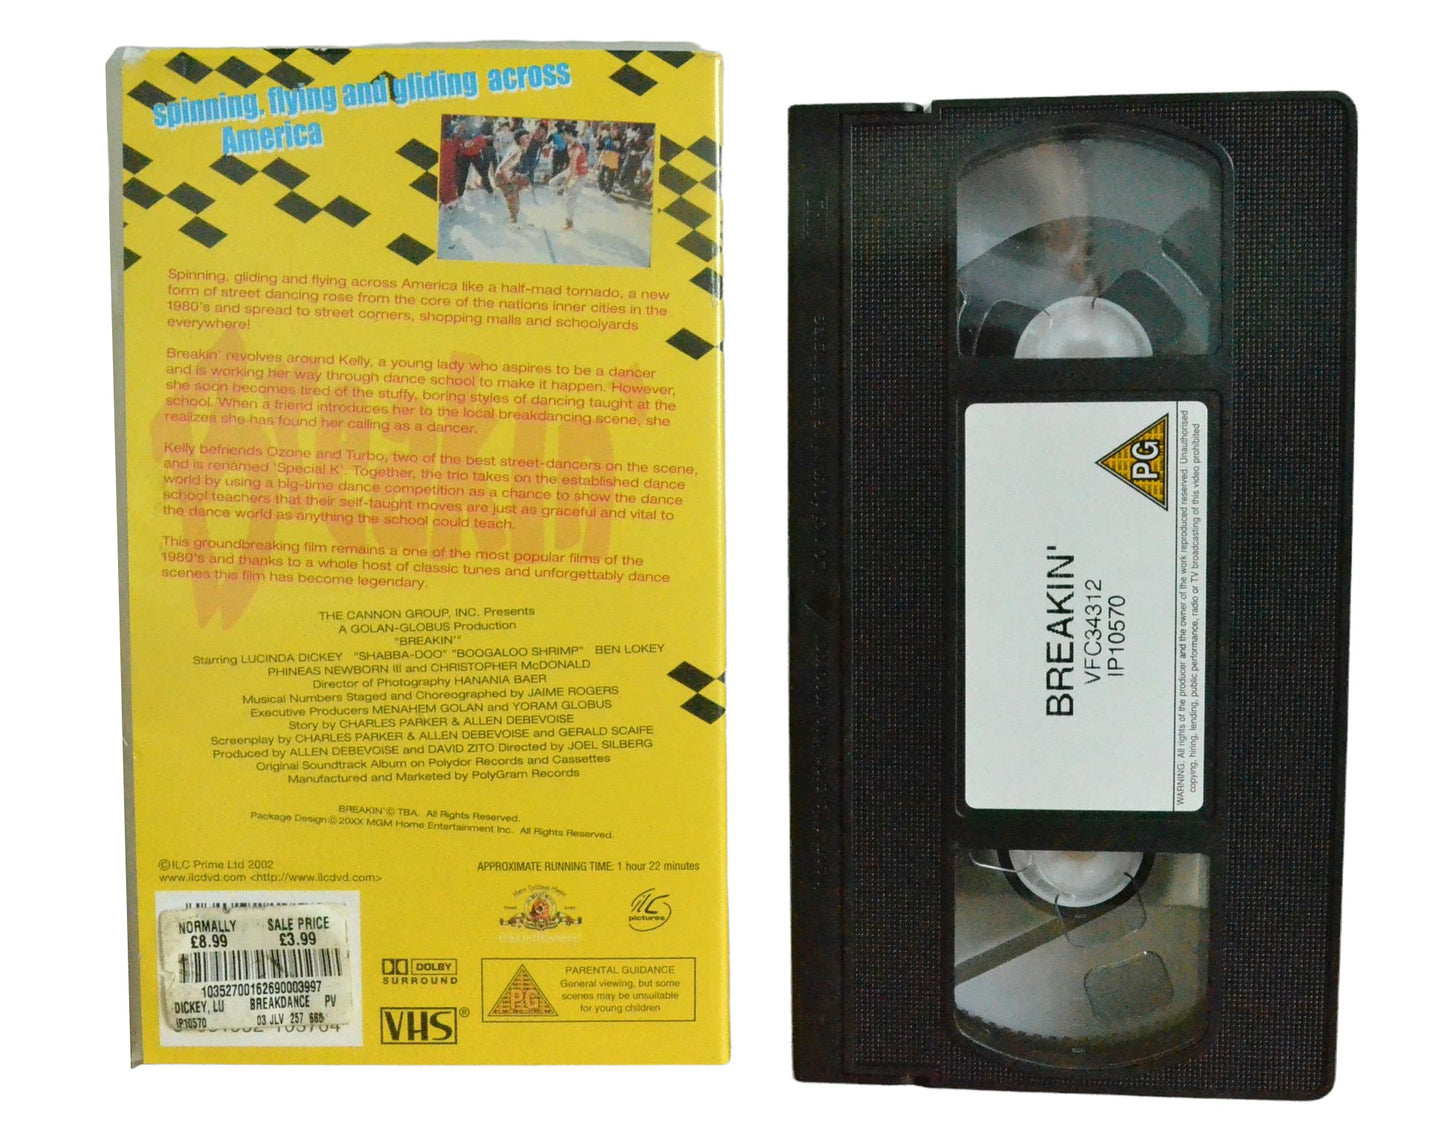 Breakin [a.k.a Breakdance] - Lucinda Dickey - Metro-Goldwyn-Mayer - Music - Pal VHS-